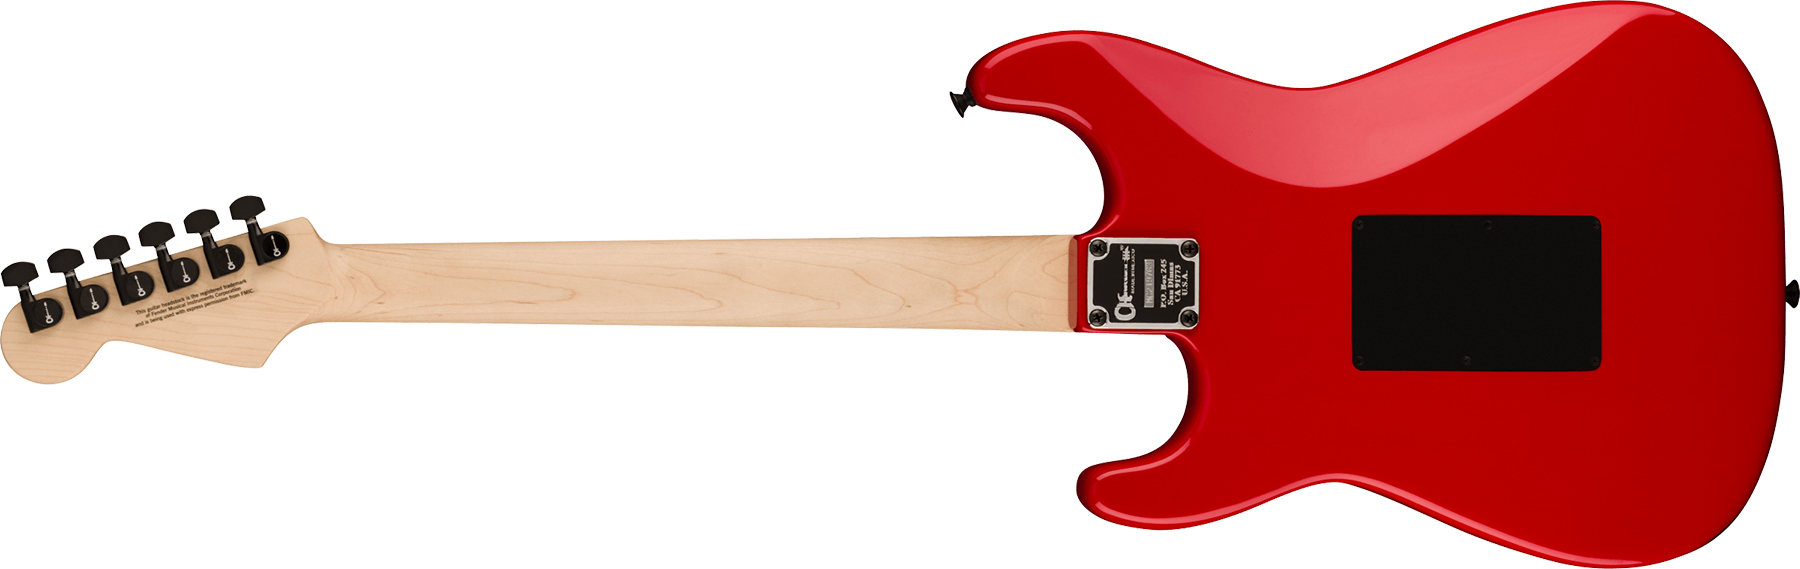 Charvel So-cal Style 1 Hss Fr E Pro-mod Seymour Duncan Eb - Ferrari Red - E-Gitarre in Str-Form - Variation 1